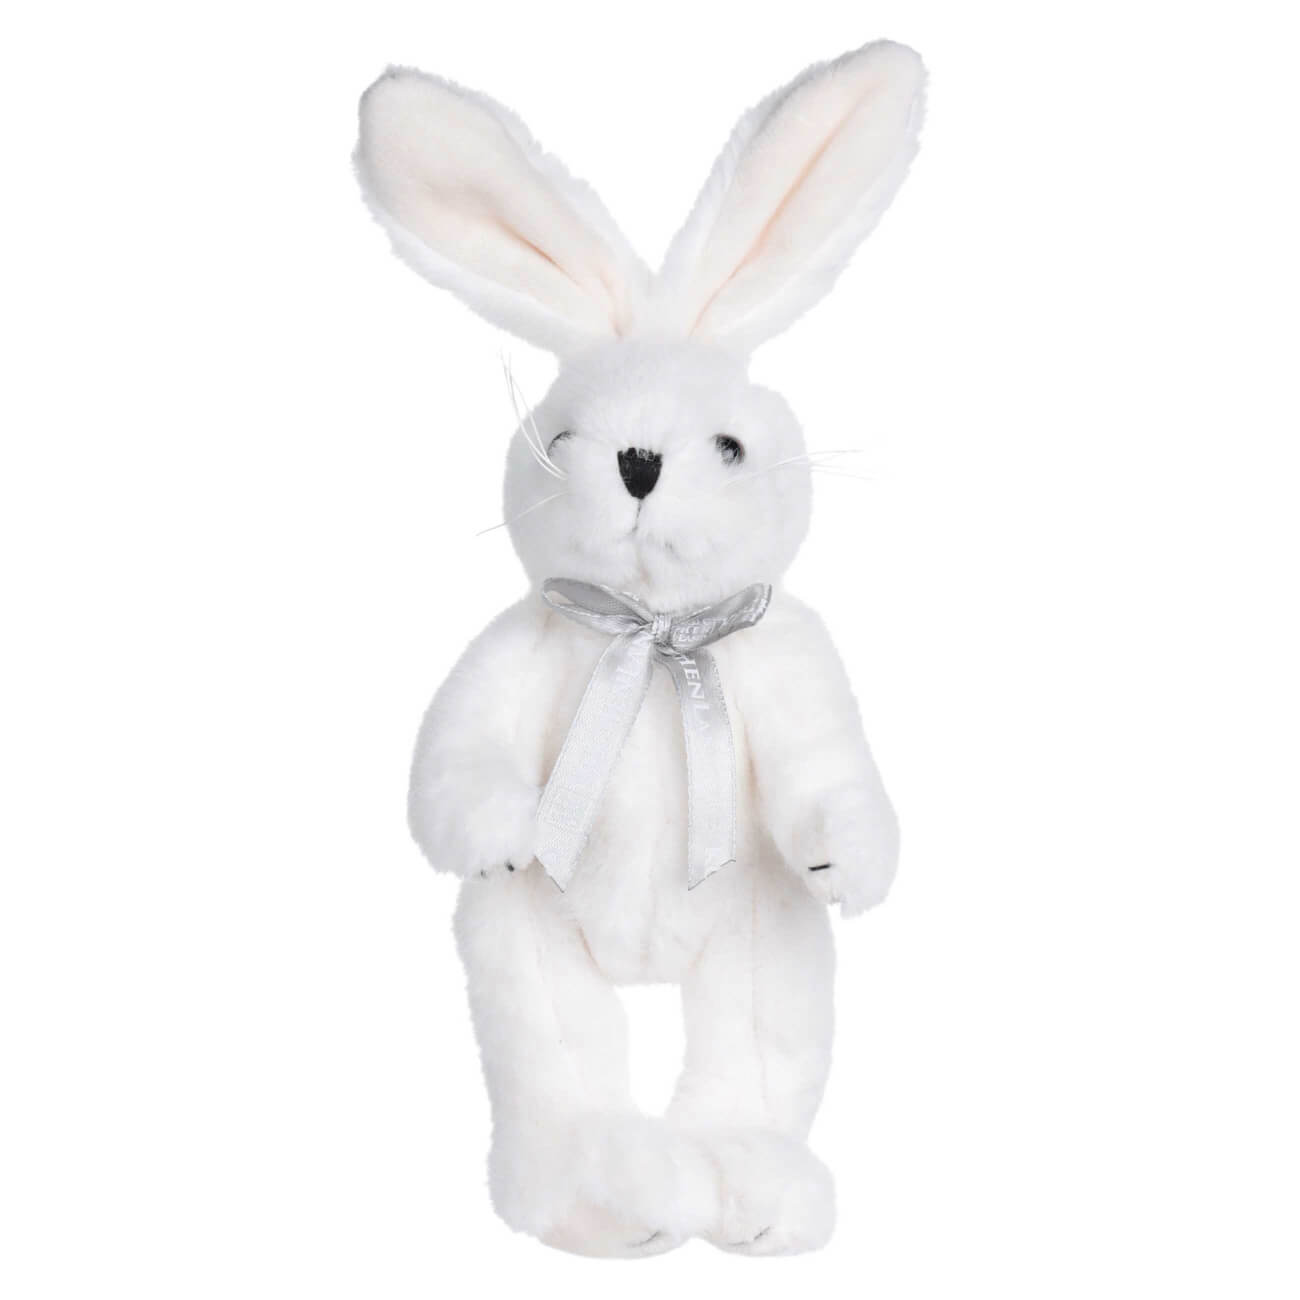 Игрушка, 20 см, мягкая, с подвижными лапами, полиэстер, белая, Кролик, Rabbit toy мягкая игрушка лиса 22 см